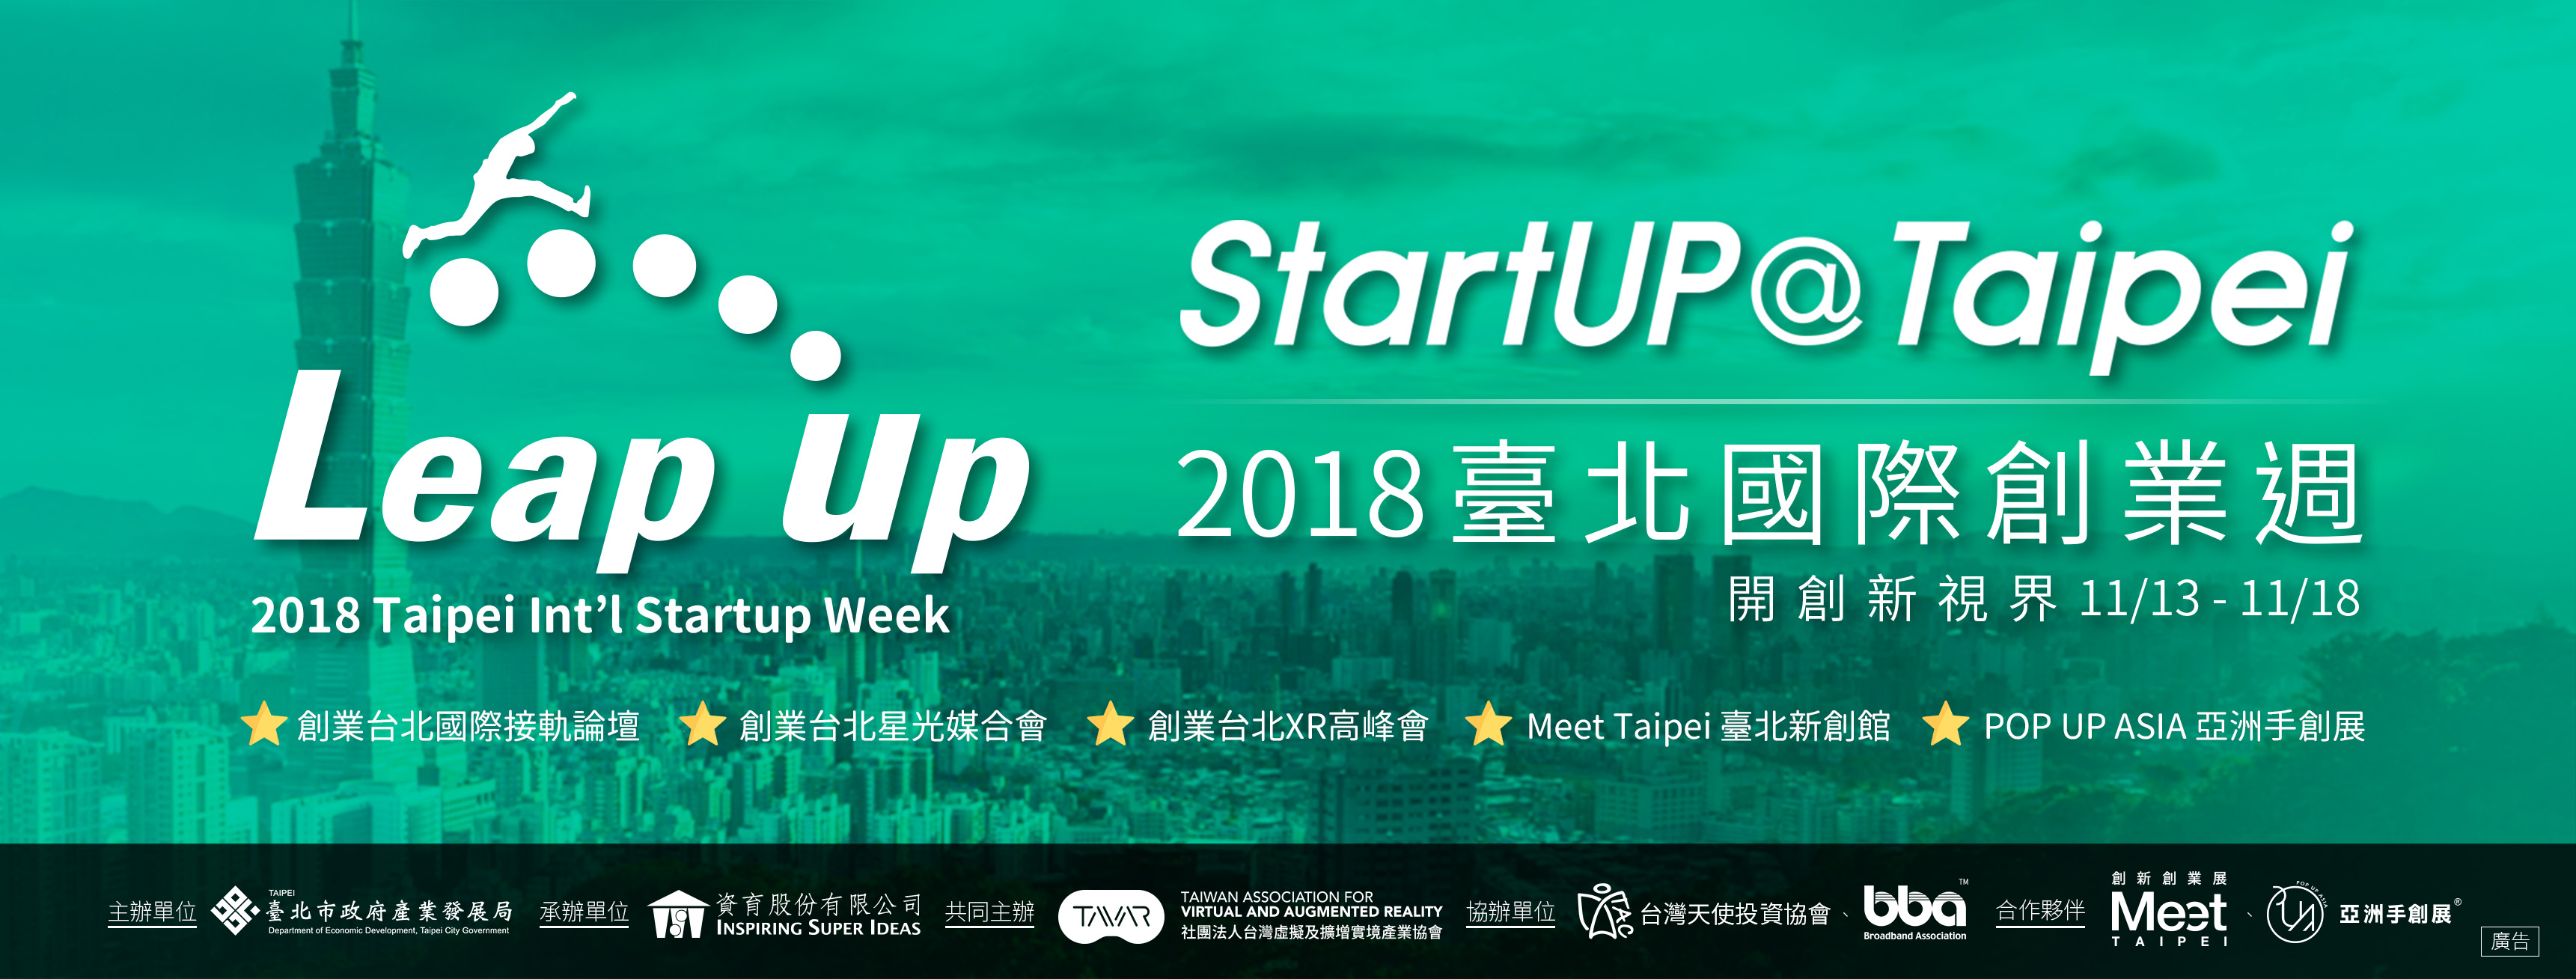 2018 Taipei Int'l Startup Week 11/13 StartUP@Taipei Global Linkage ForumImage